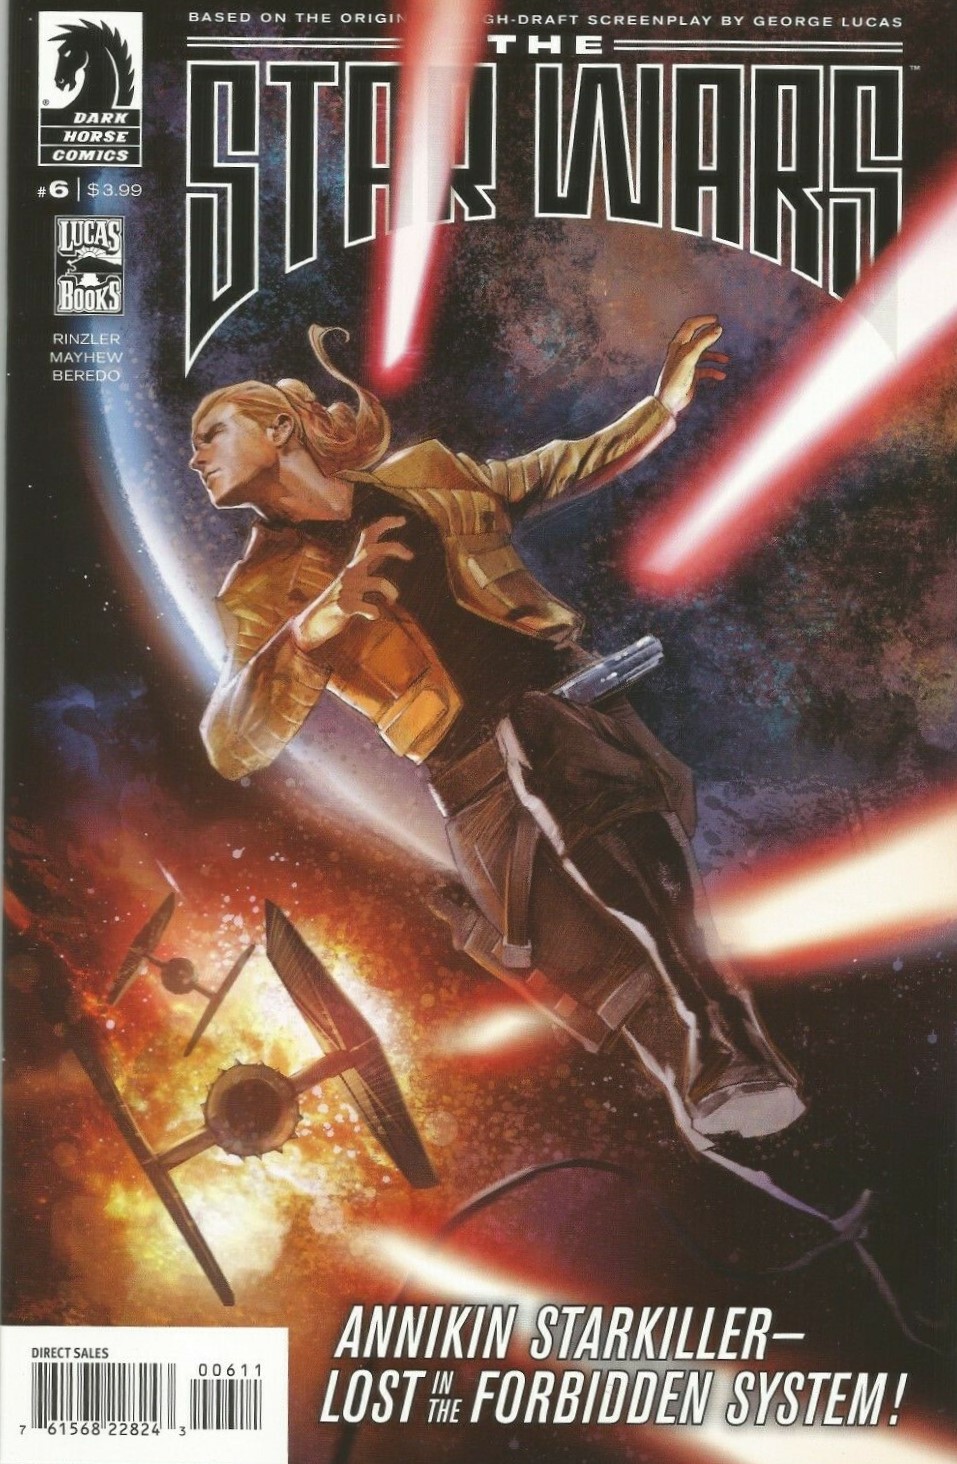 Star Wars #6 Lucas Draft